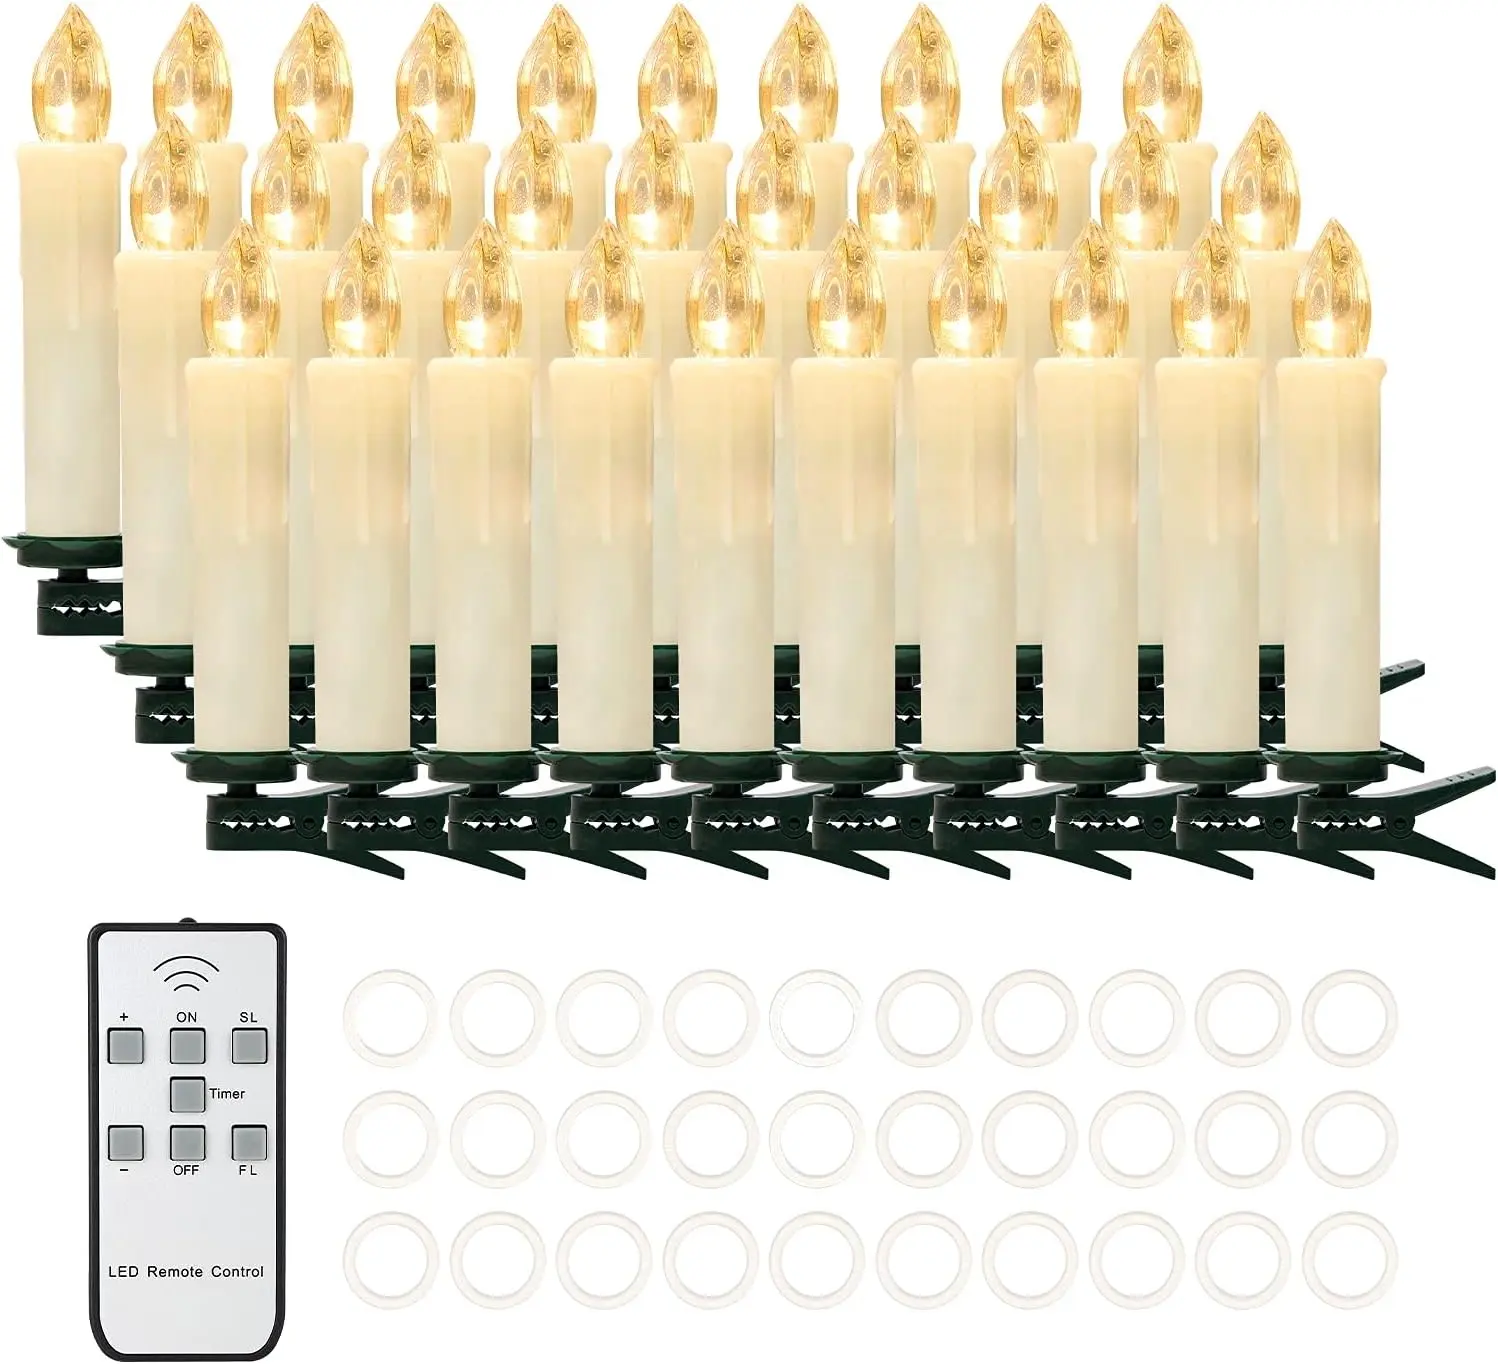 Lilin listrik LED tanpa api, lampu lilin listrik dengan Remote sempurna untuk taman rumah